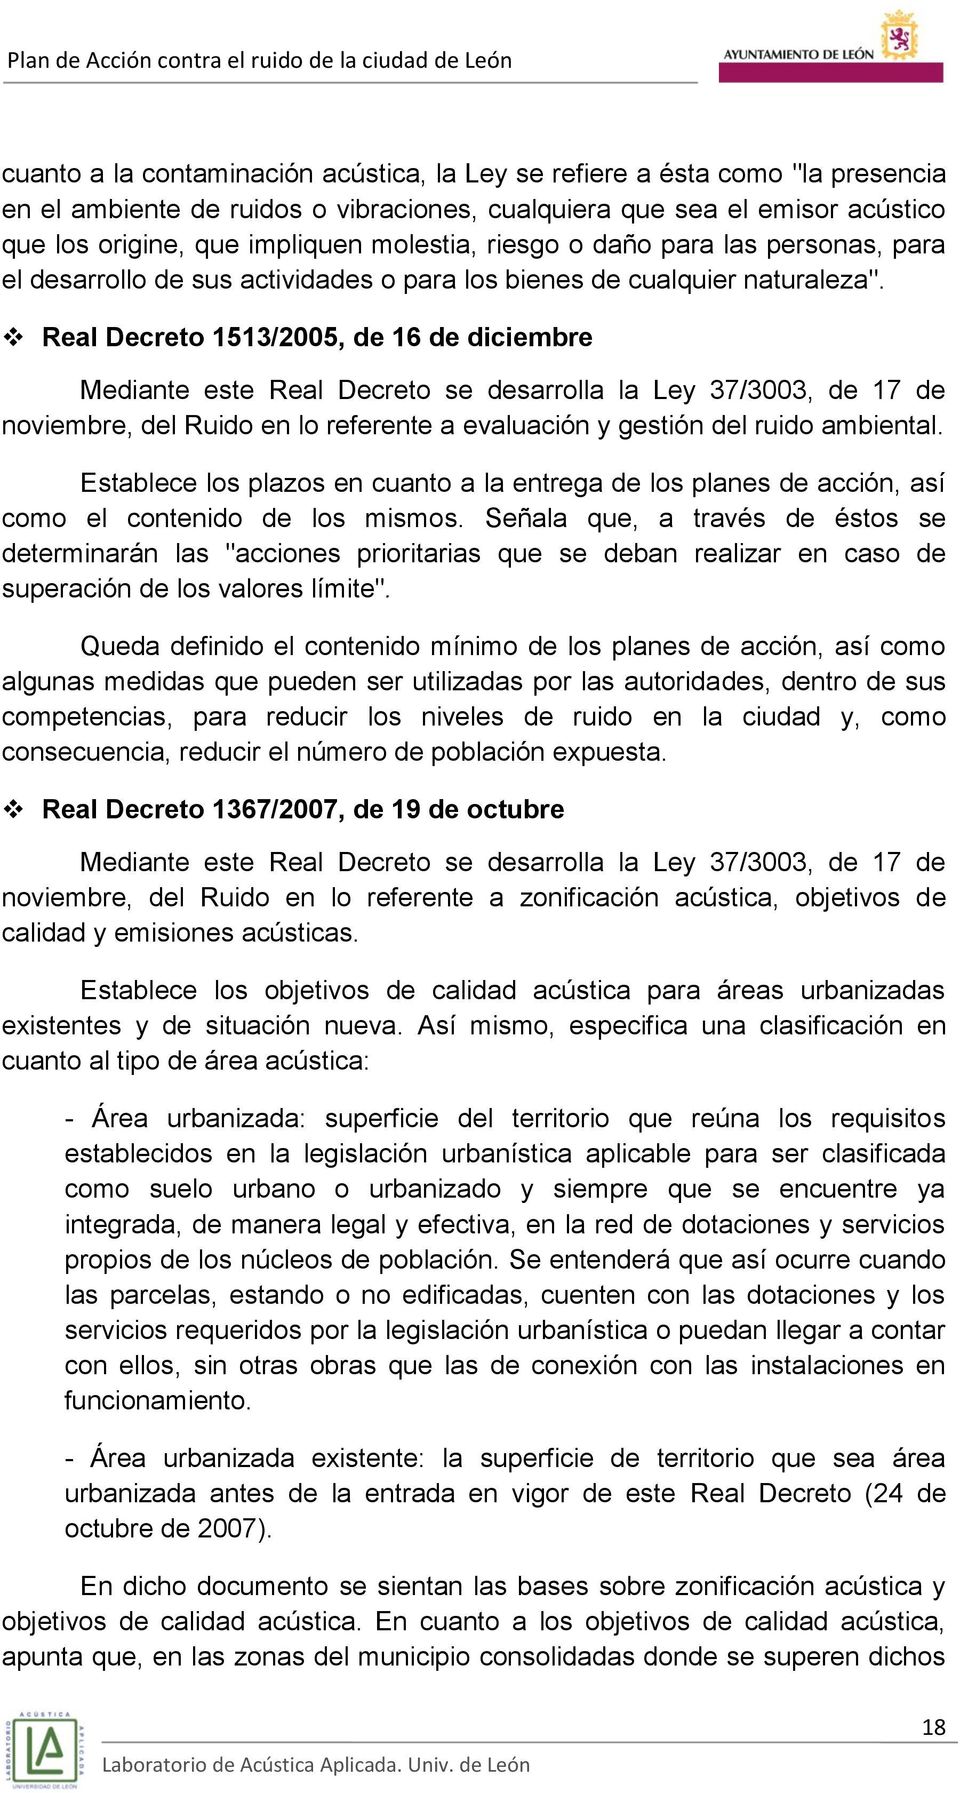 Real Decreto 1513/2005, de 16 de diciembre Mediante este Real Decreto se desarrolla la Ley 37/3003, de 17 de noviembre, del Ruido en lo referente a evaluación y gestión del ruido ambiental.